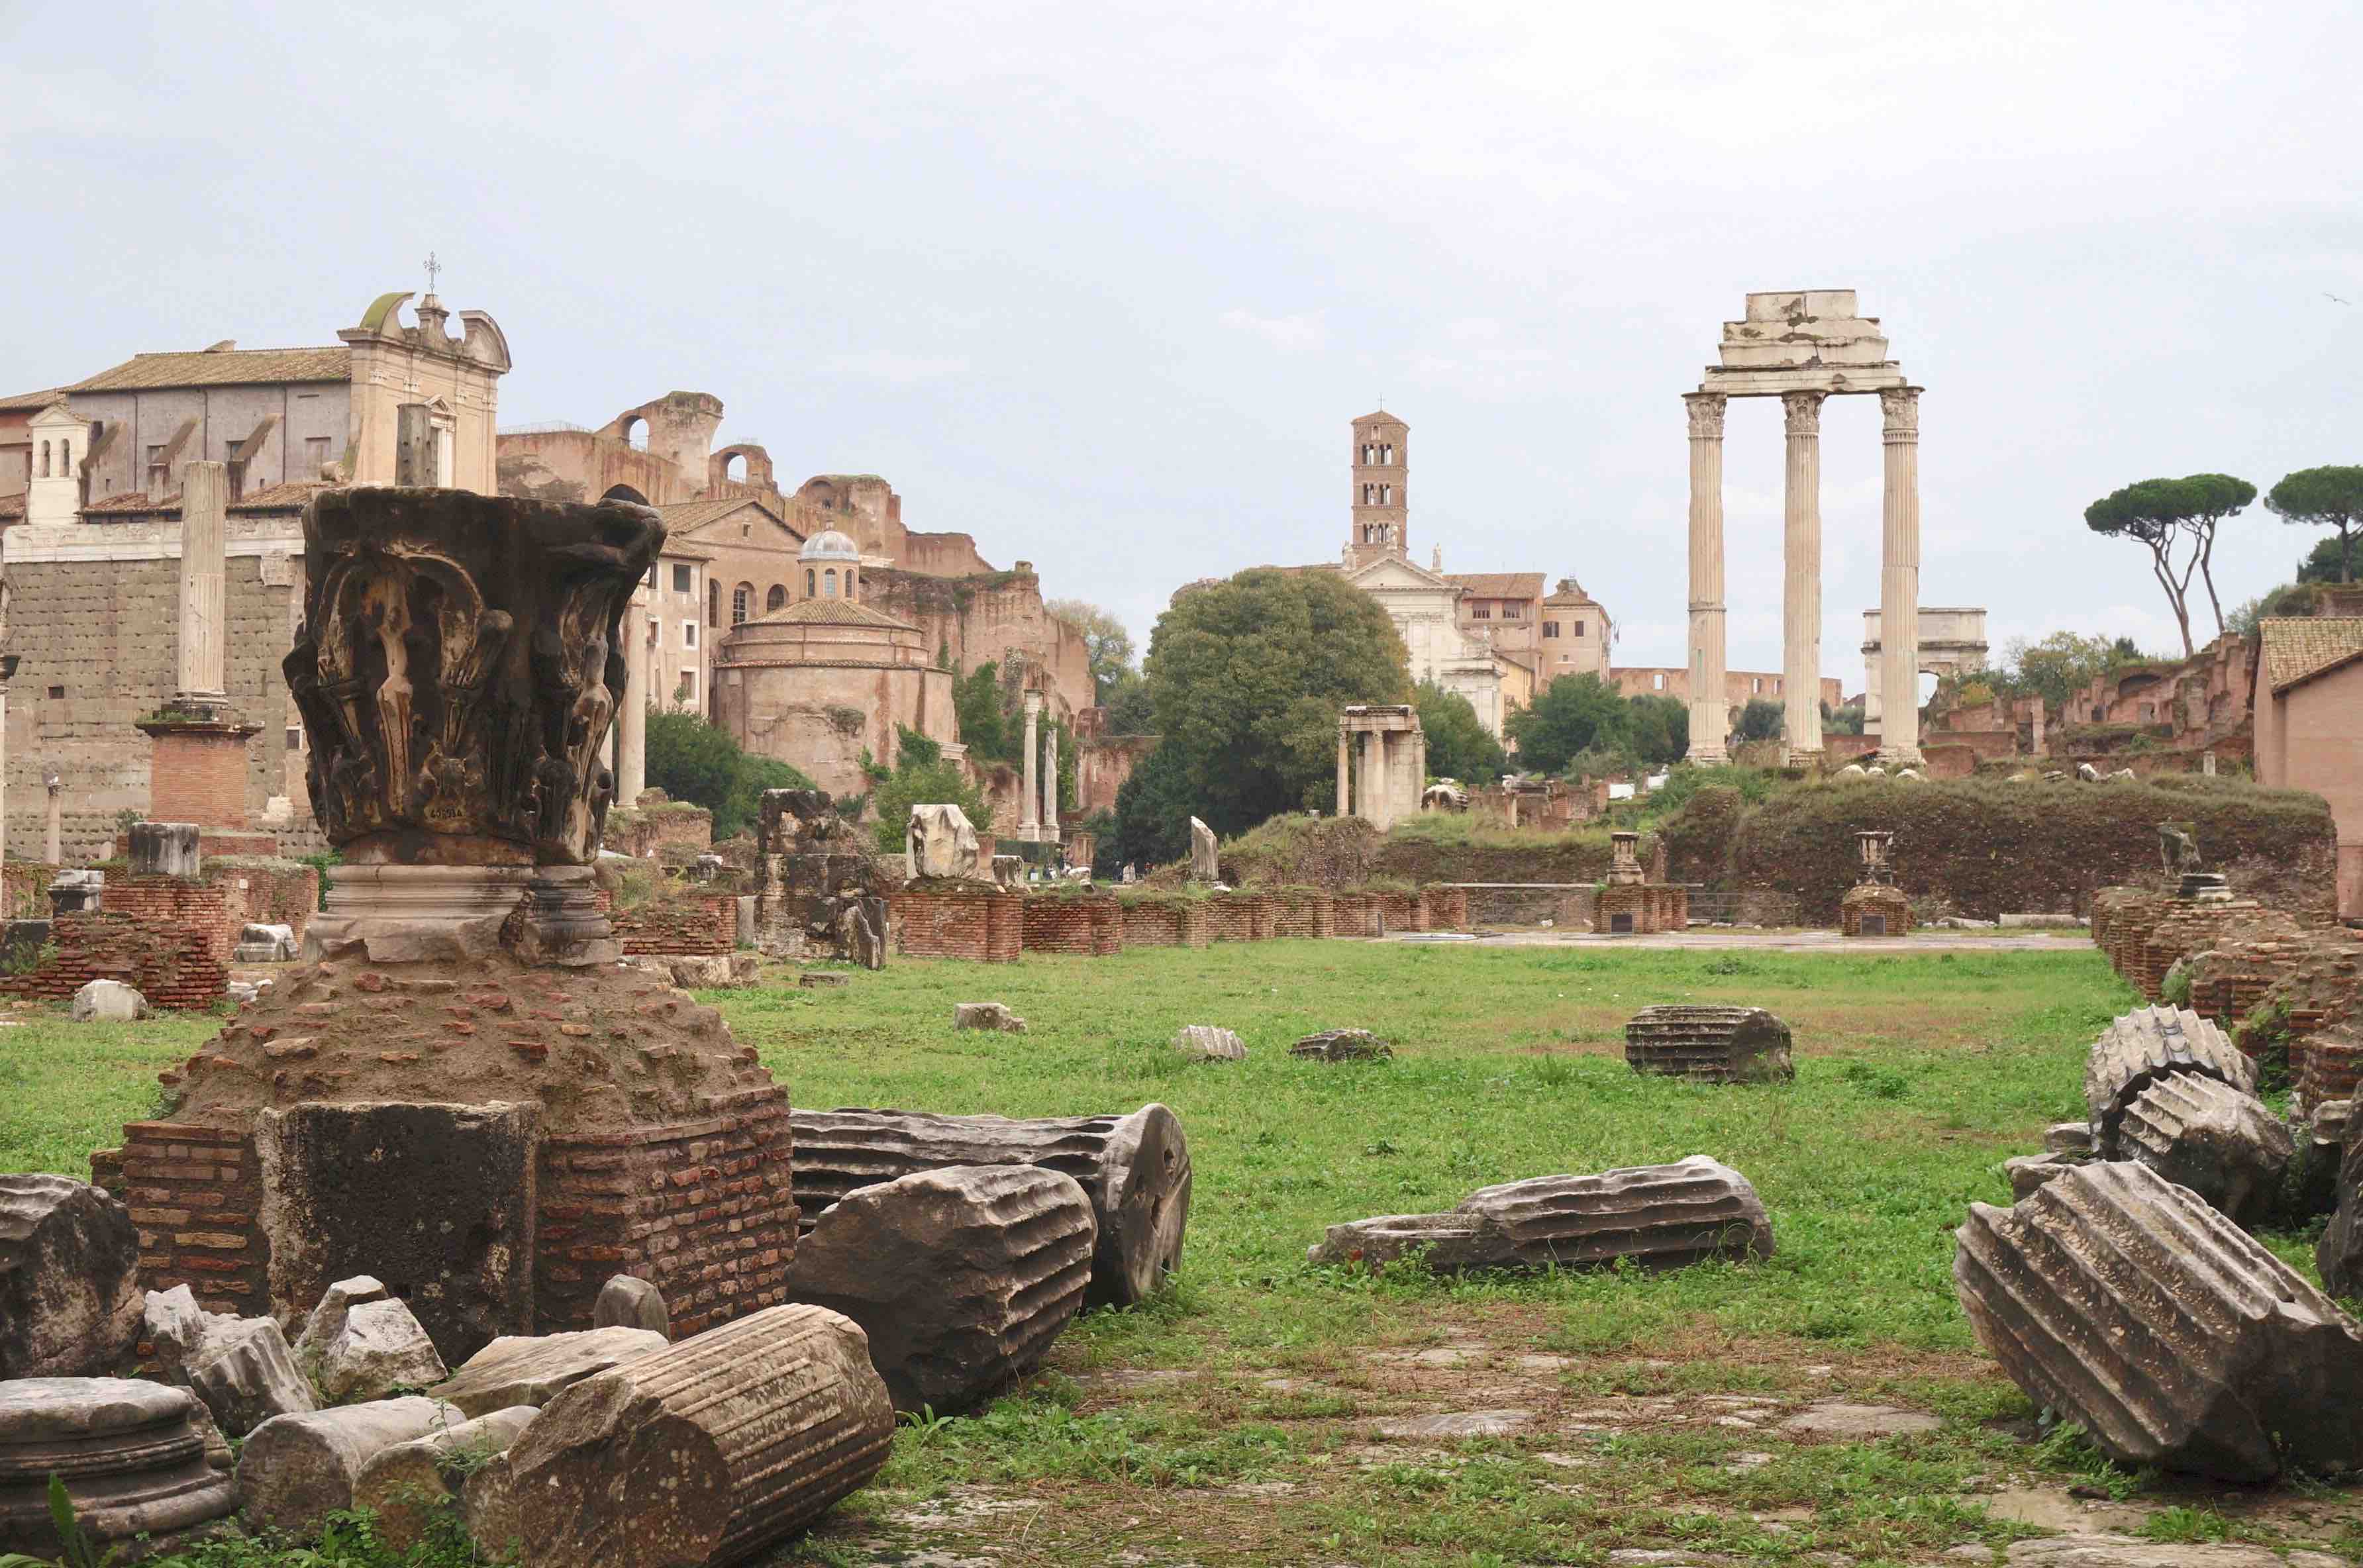 forum romain, rome, italie